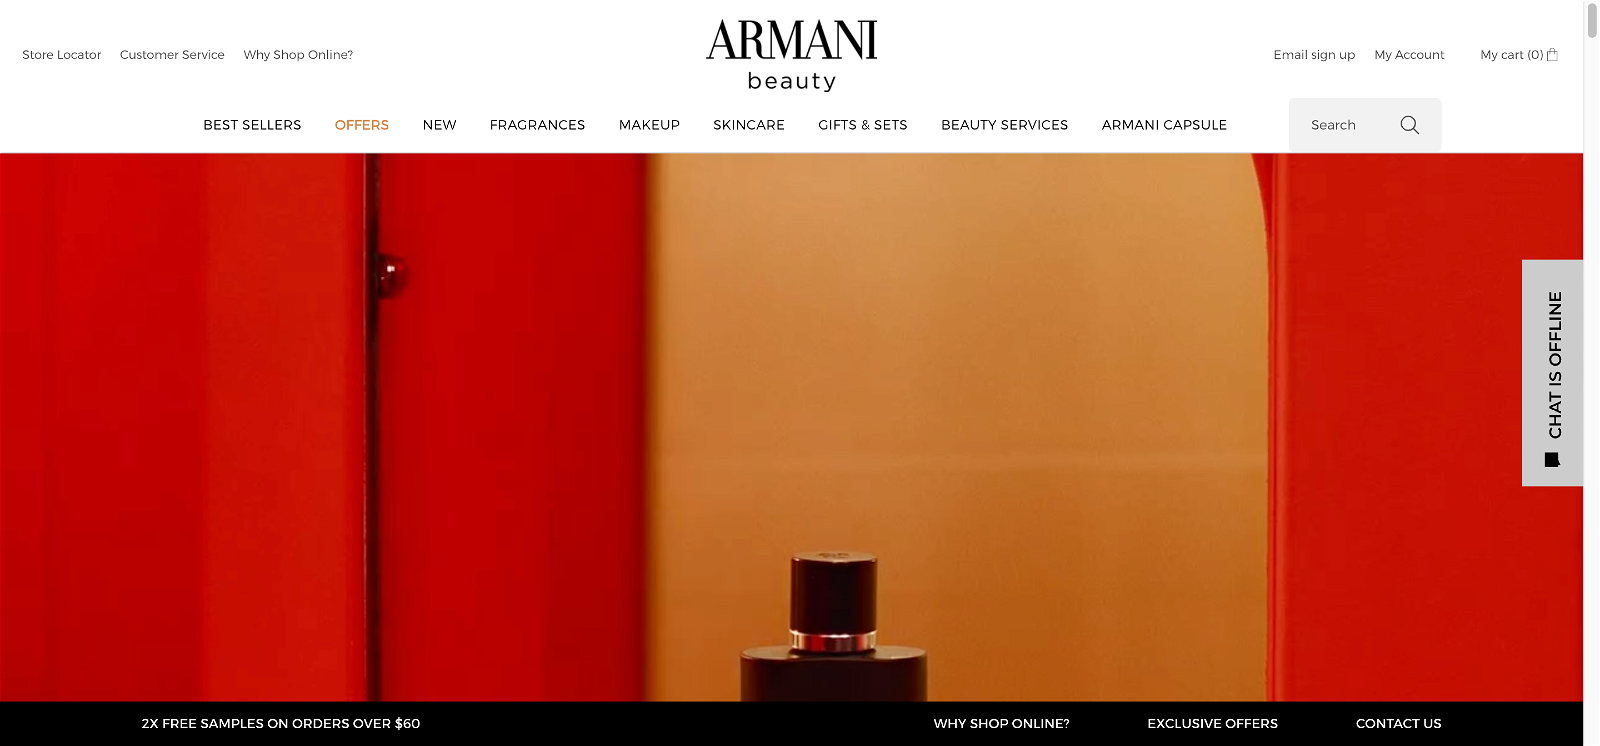 Giorgio armani beauty usa 1